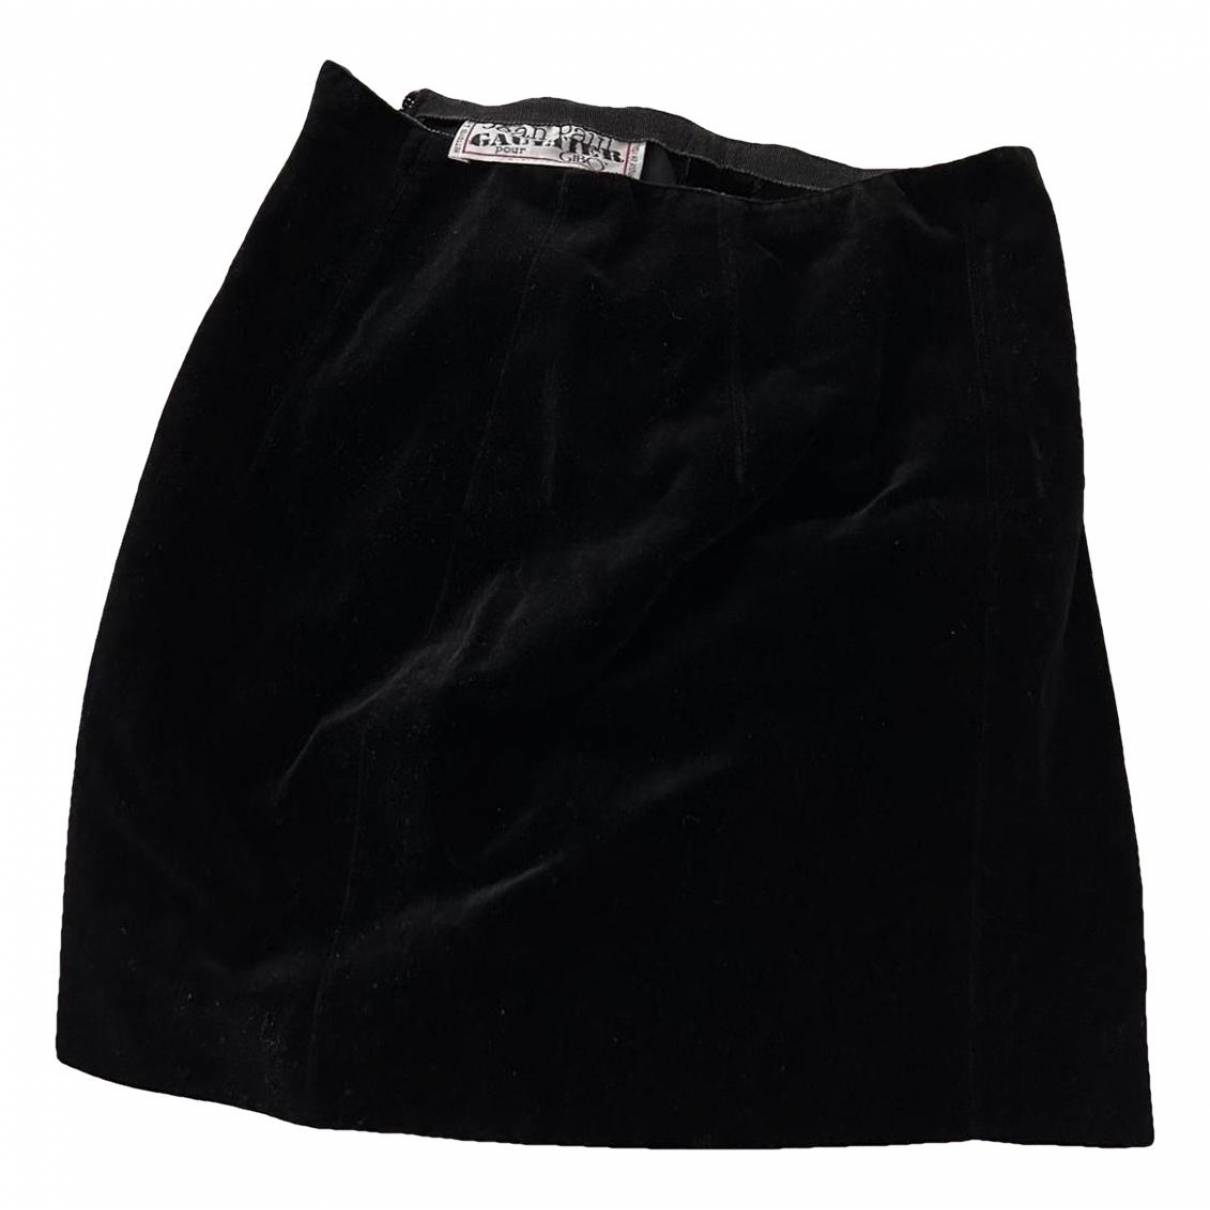 Velvet mini skirt Jean Paul Gaultier Black size 4 US in Velvet